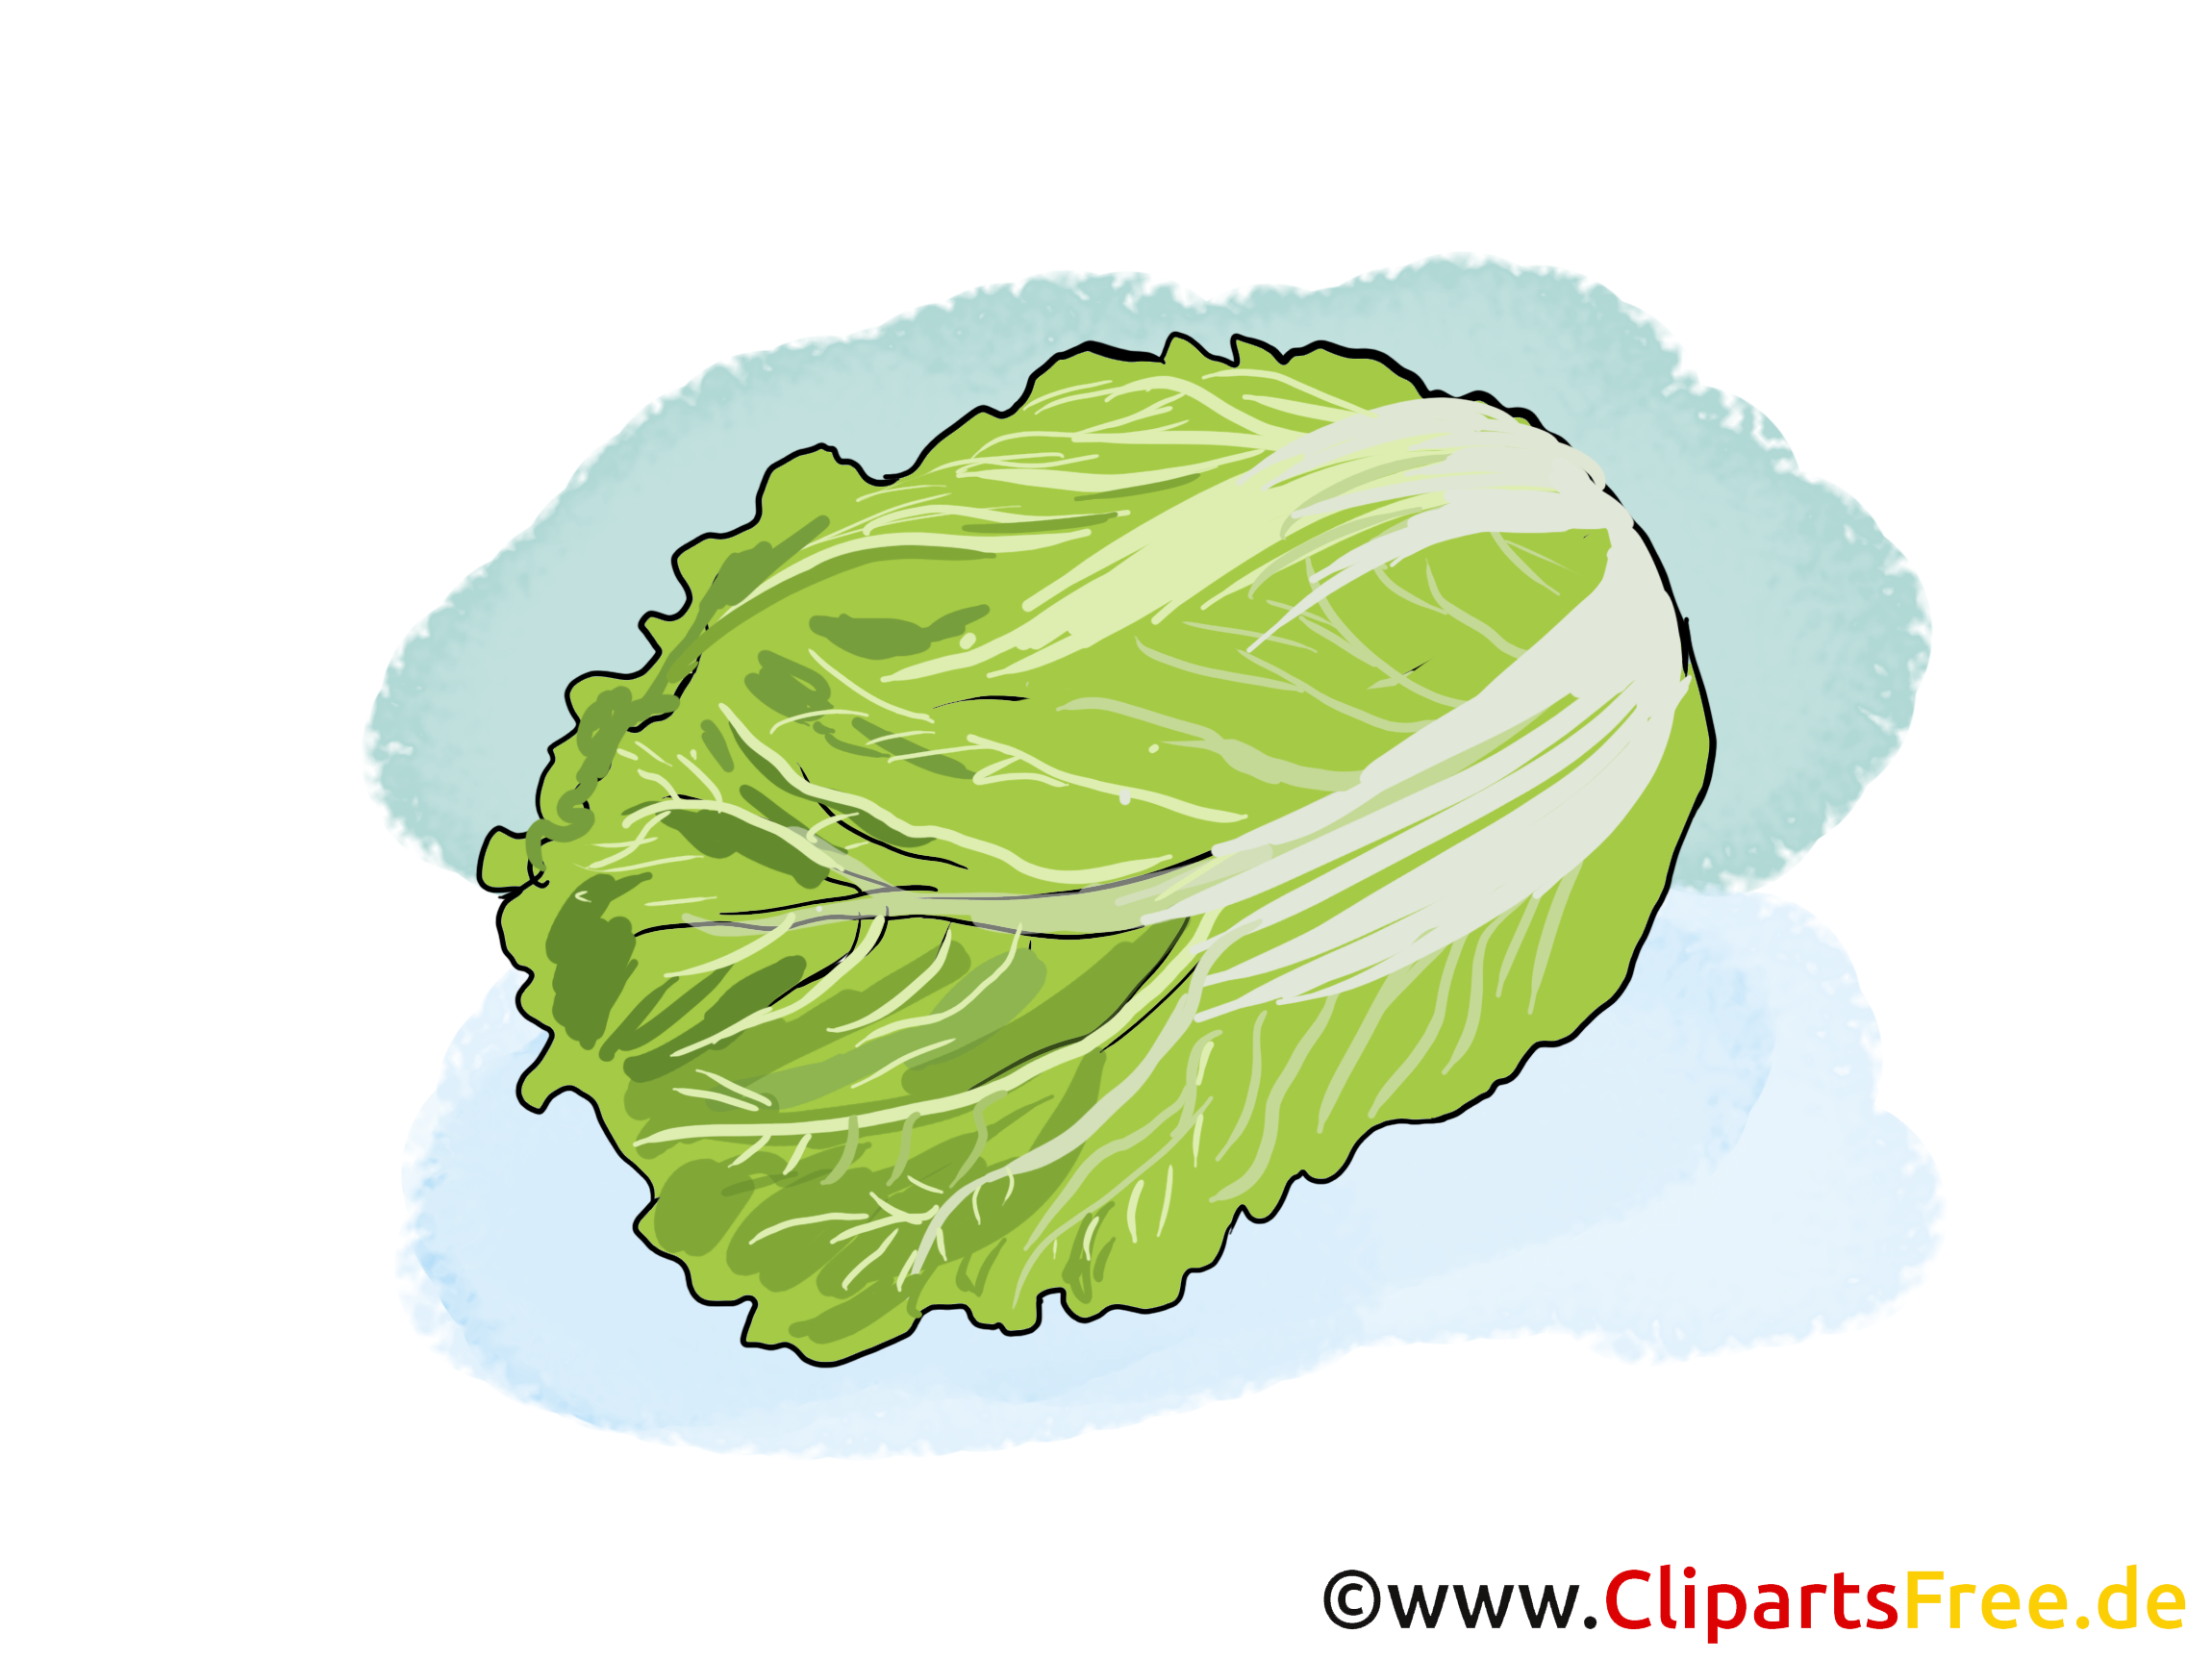 clipart gratuit legumes - photo #11